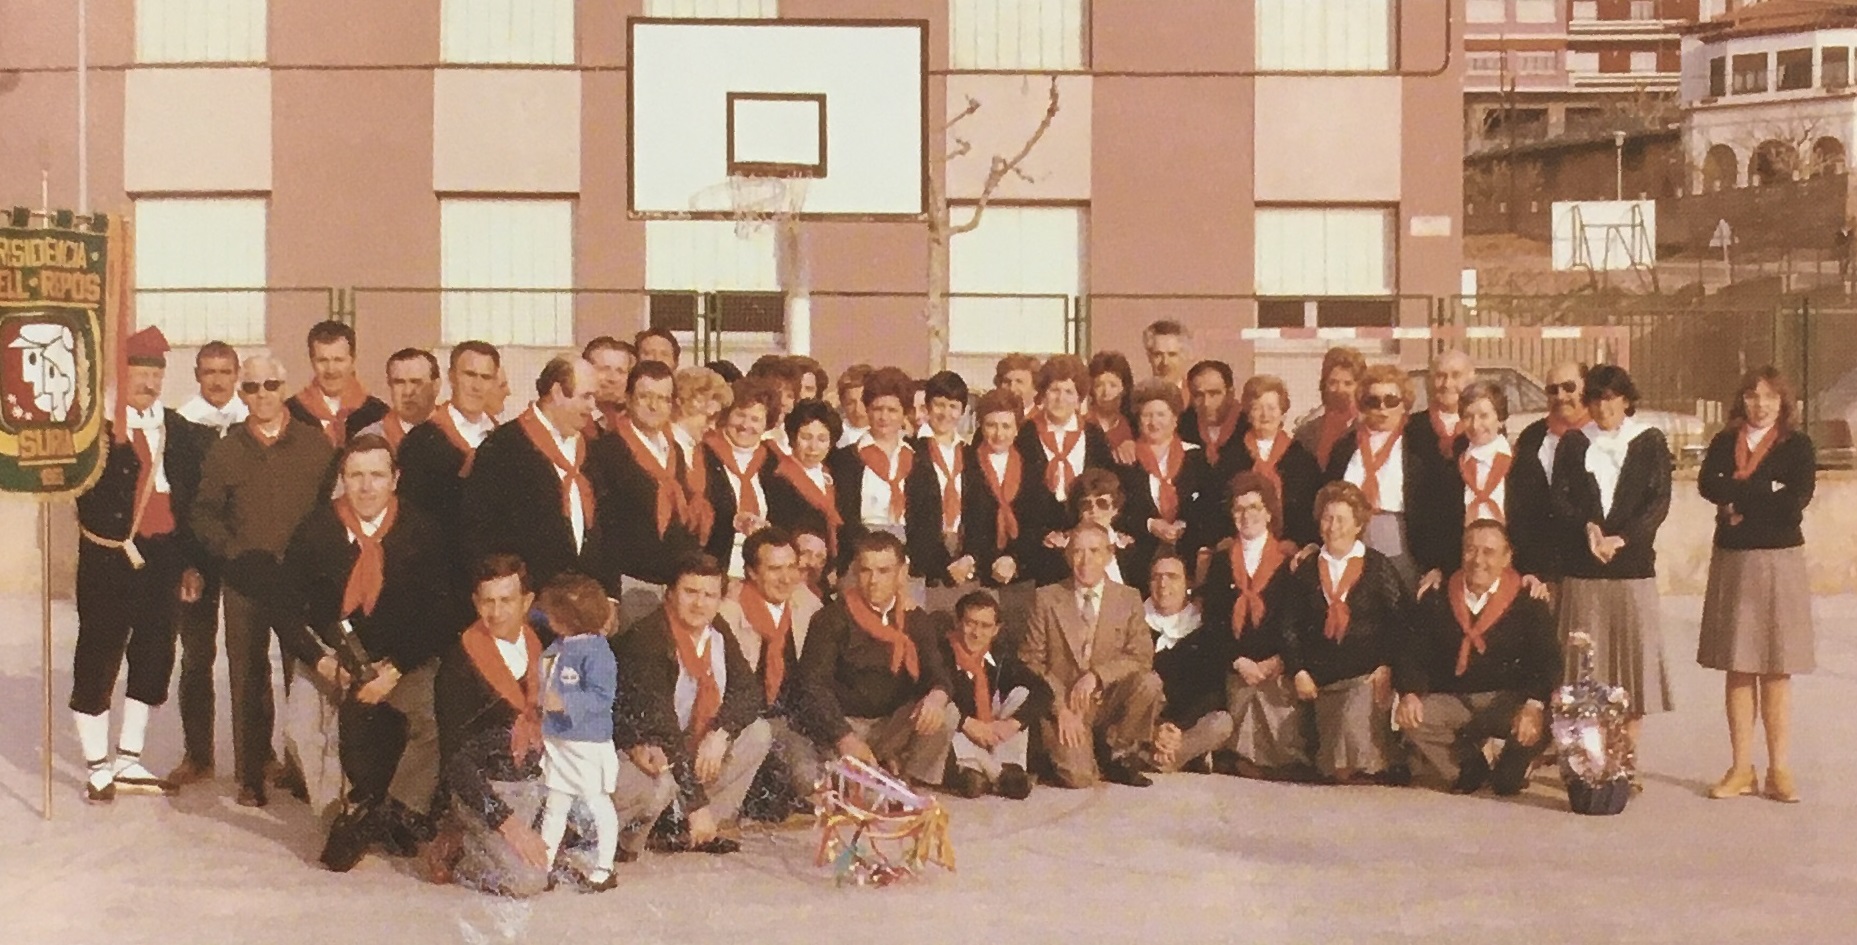 Any 1982 - Colla caramellaire de la Coral Bell RepÃ²s (font: llibre 'Les Caramelles de SÃºria' de NÃºria Balaguer i Riera).